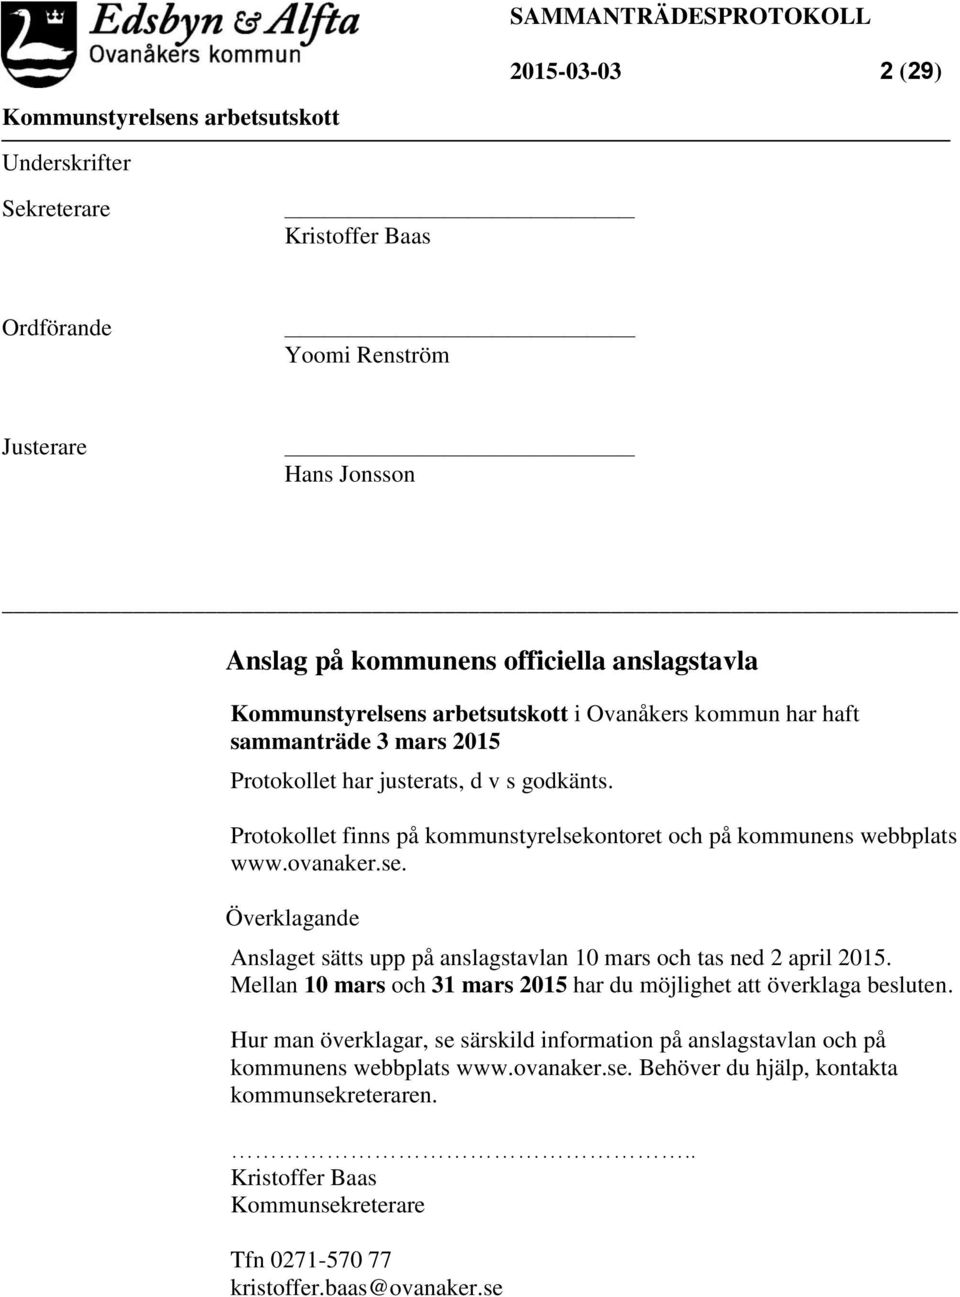 Protokollet finns på kommunstyrelsekontoret och på kommunens webbplats www.ovanaker.se. Överklagande Anslaget sätts upp på anslagstavlan 10 mars och tas ned 2 april 2015.